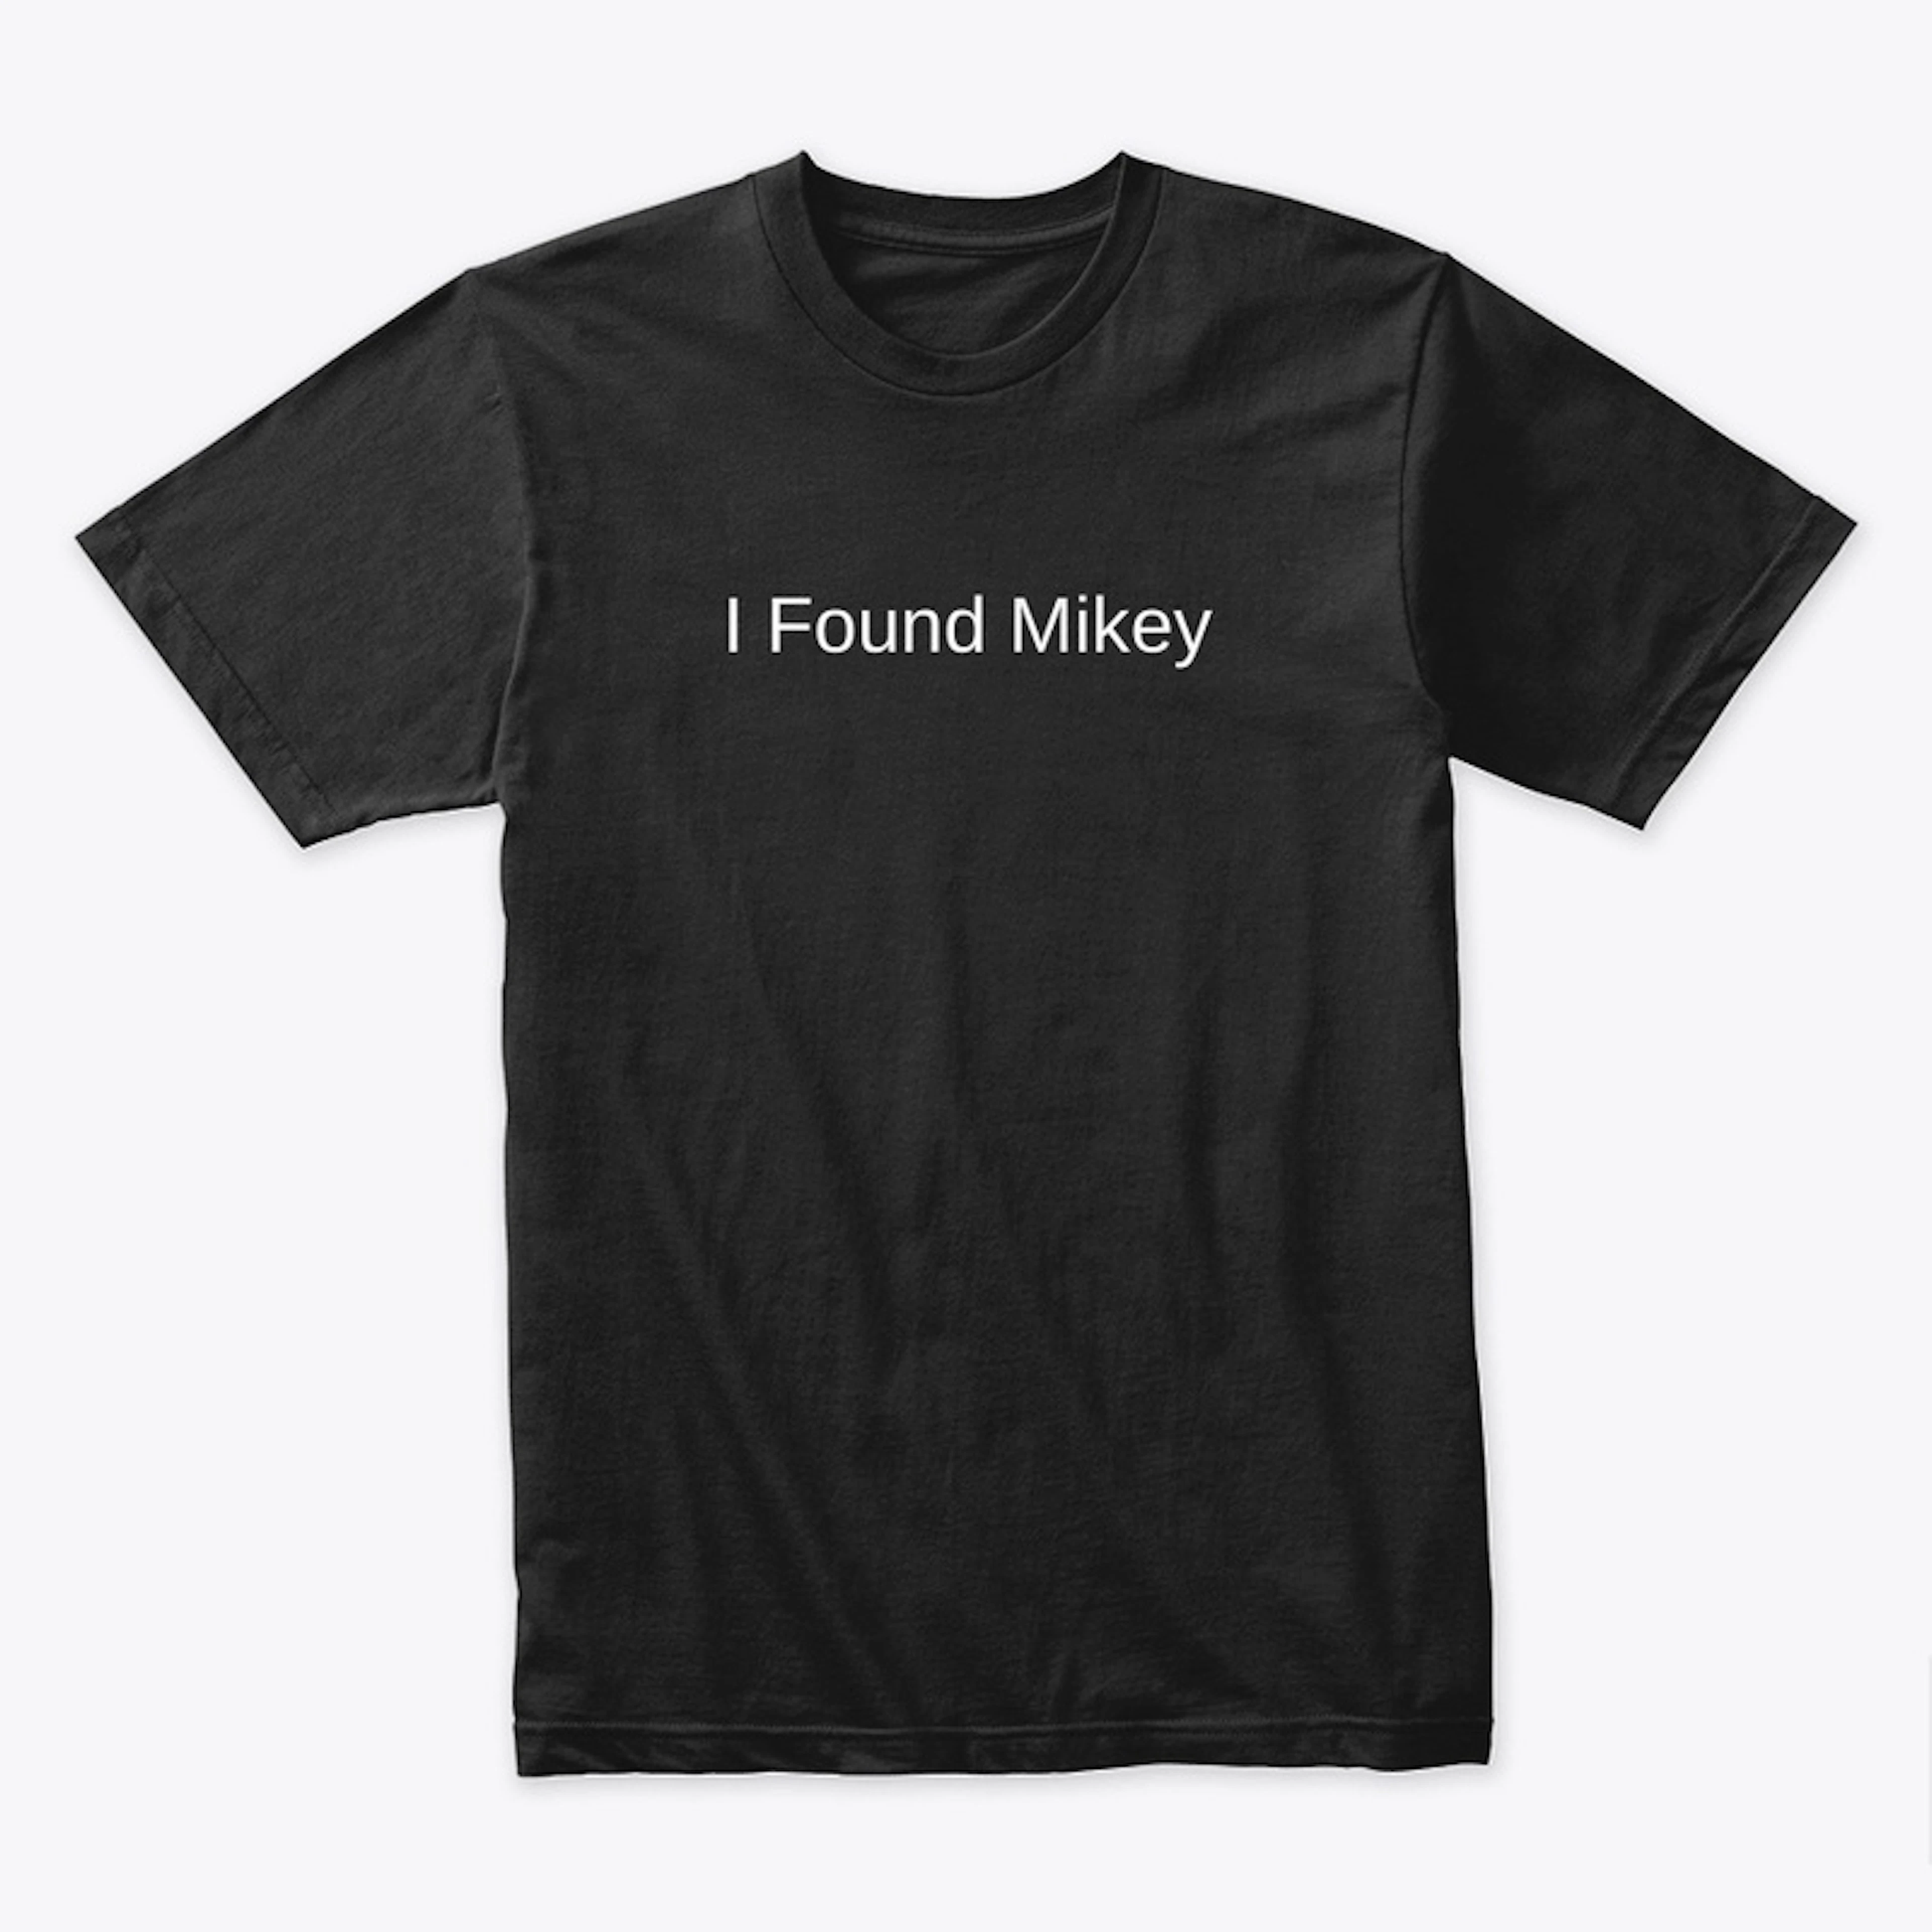 I Found Mikey